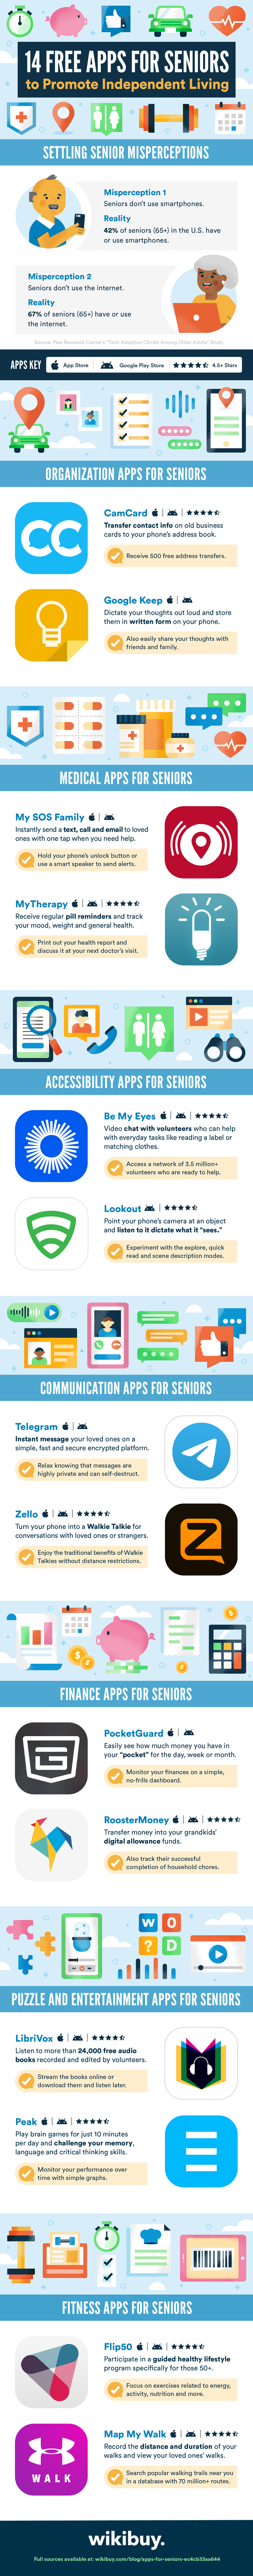 Apps for seniors